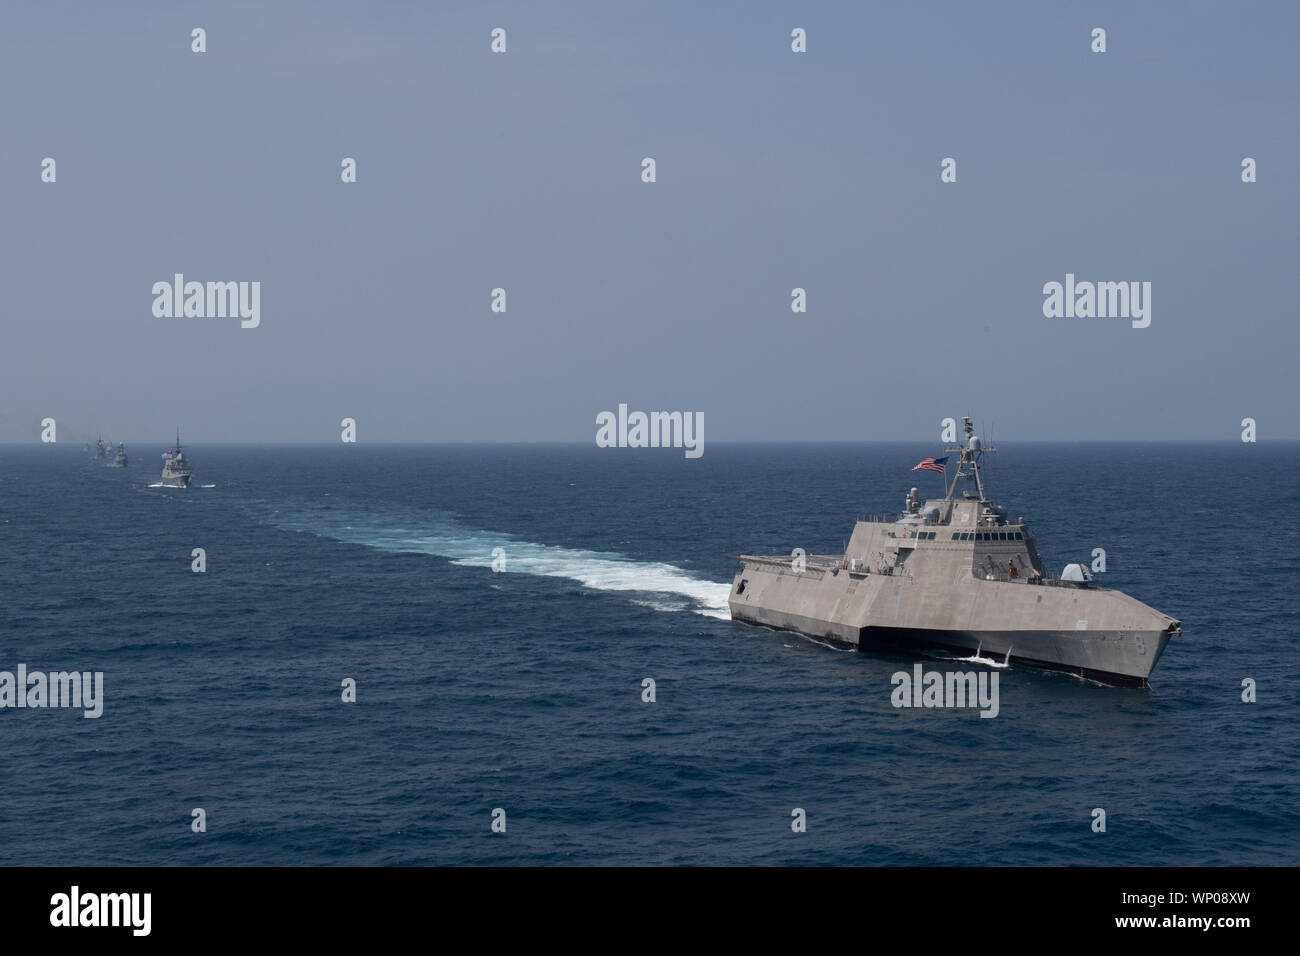 Golfo di Thailandia (sett. 4, 2019) - USS Montgomery (LCS 8), un'indipendenza-variante Littoral Combat Ship, vele in formazione durante un esercizio di foto come parte dell'ASEAN-STATI UNITI Esercizio marittimo (AUMX). Il primo AUMX, co-guidato da Stati Uniti e Royal Thai marine, include le forze marittime da parte degli Stati Uniti e tutti i dieci Stati membri dell'ASEAN. AUMX promuove gli impegni condivisi per partenariati marittimo, la sicurezza e la stabilità nel sudest asiatico. (U.S. Foto di Marina di Massa lo specialista di comunicazione 1a classe Alexandra Seeley) Foto Stock